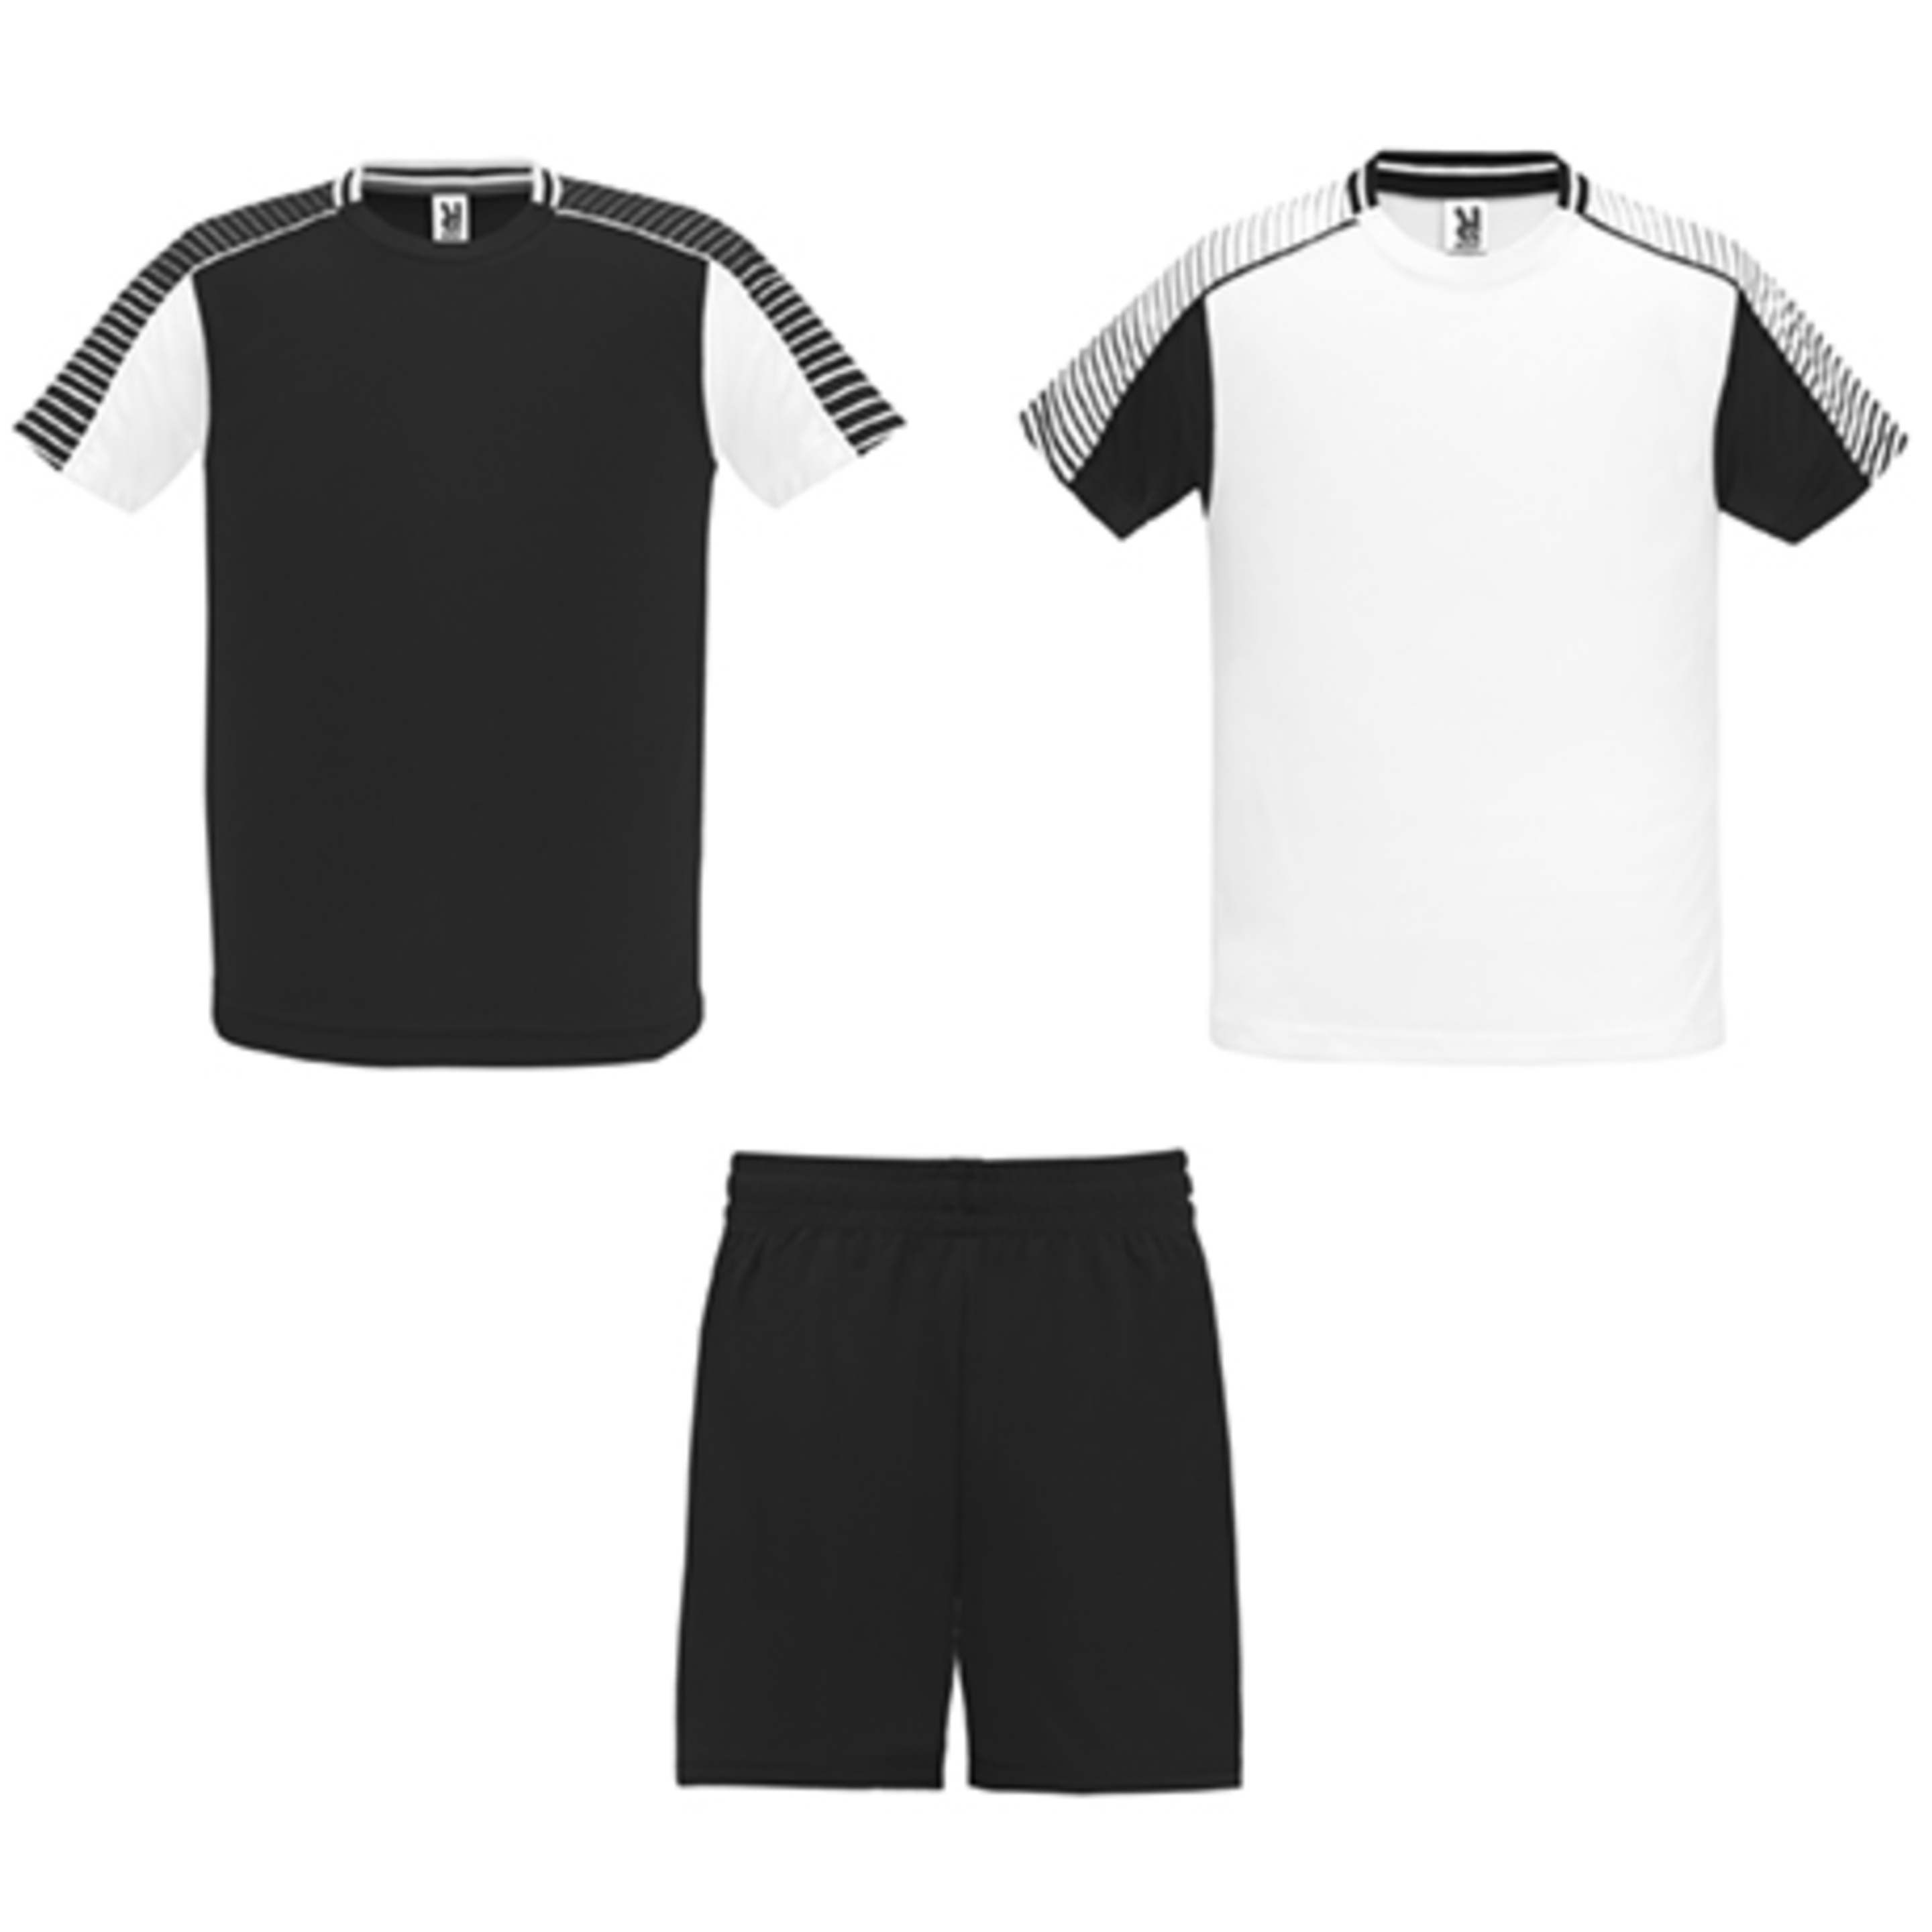 Conjunto Deportivo Juve Kid Compuesto Por 2 Camisetas Y 1 Pantalón.